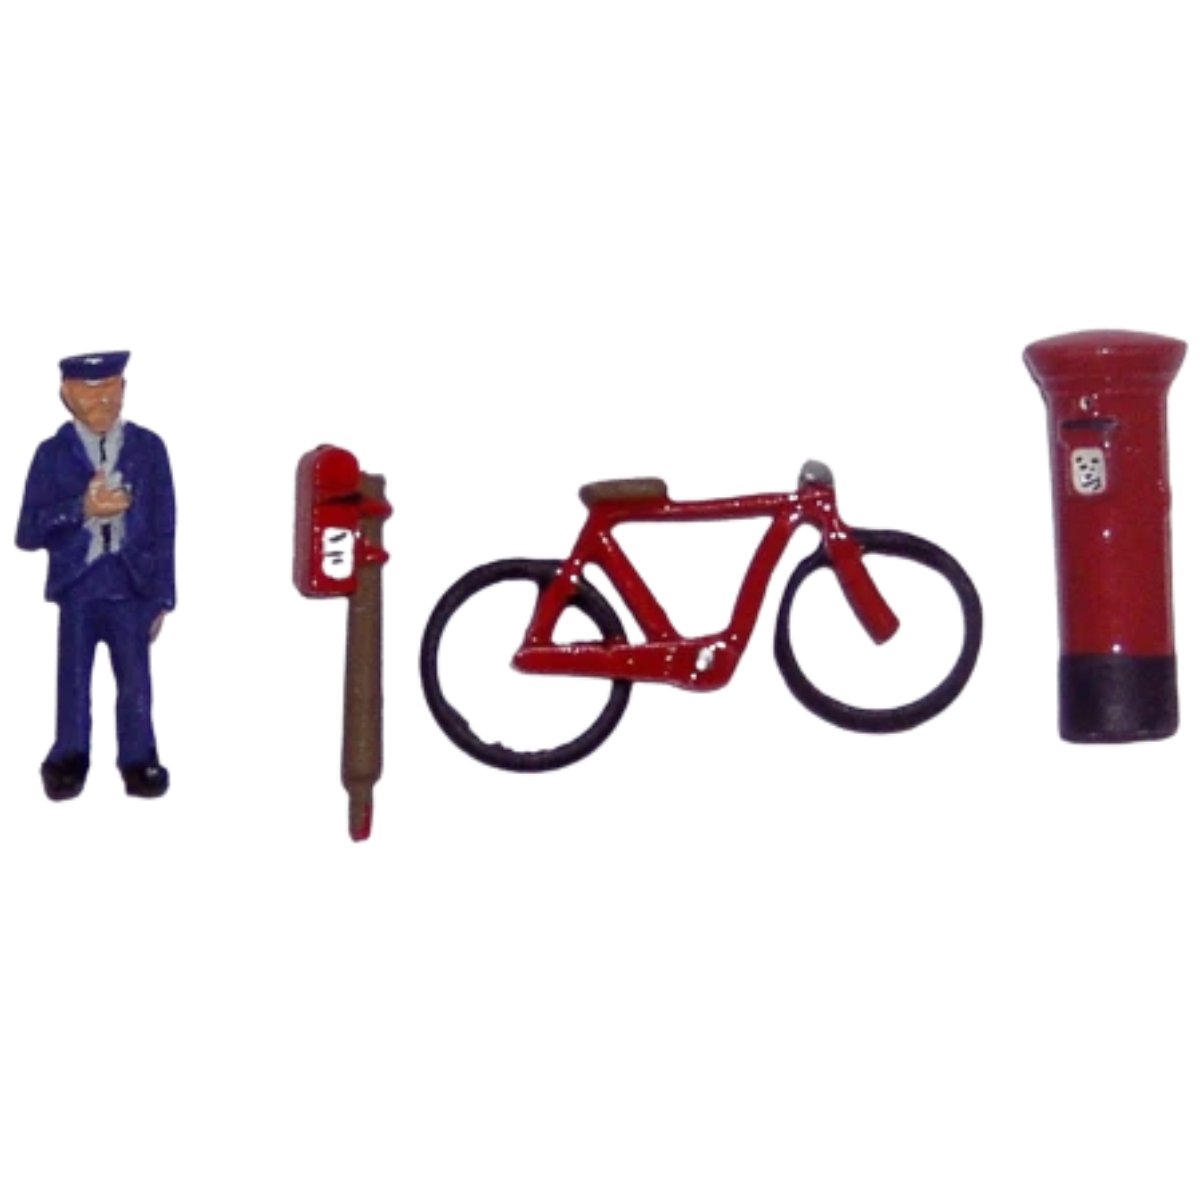 P&D Marsh PDZ07 Postman, Bike & Postboxes (OO Gauge) - Phillips Hobbies